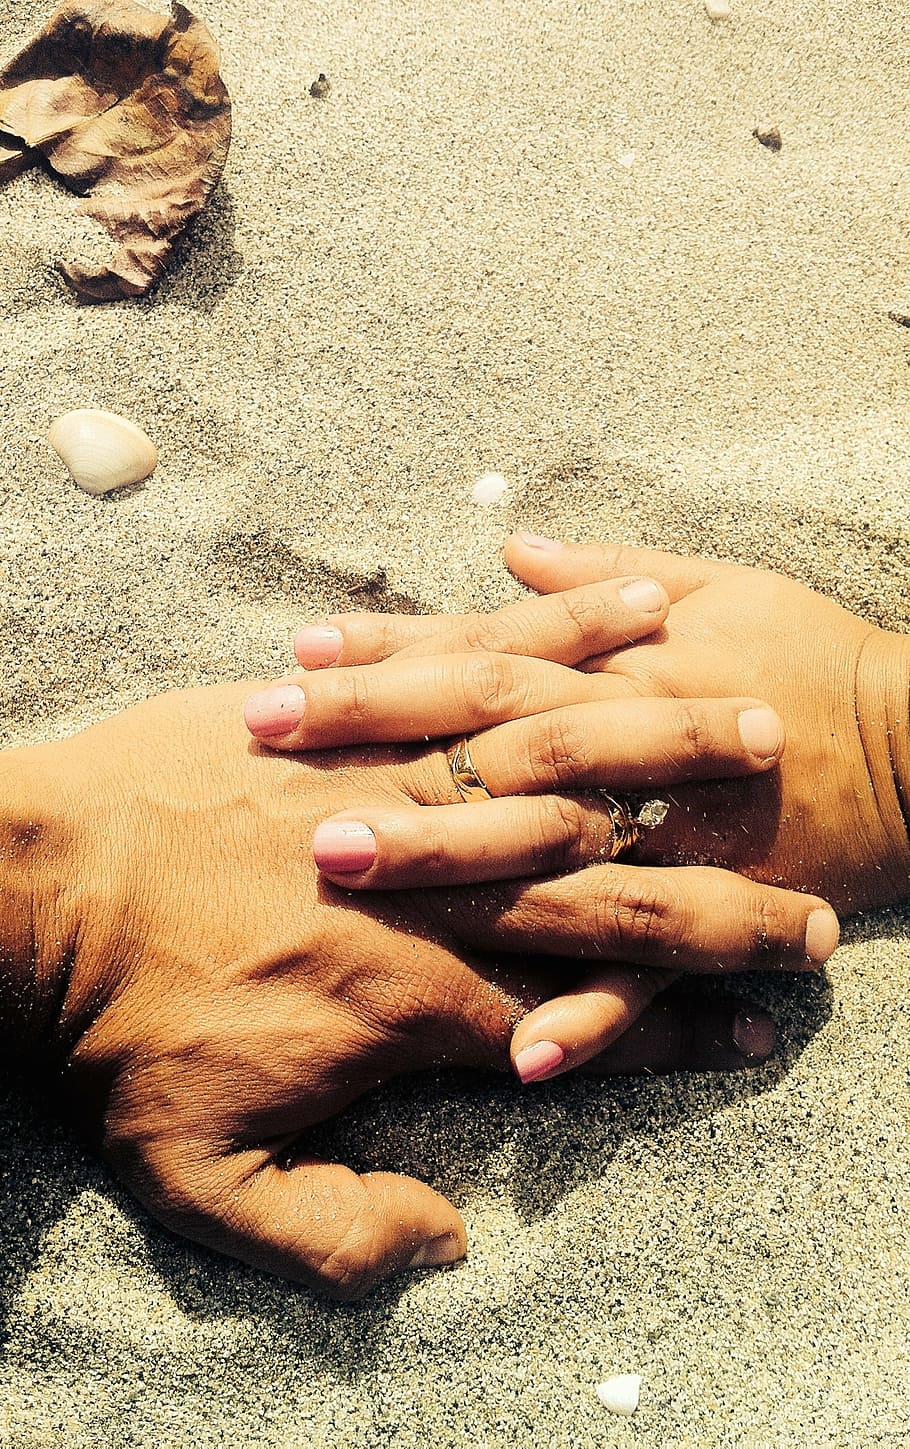 クローズアップ写真, 2人, 手のひら, グレー, 砂, 人間, 持つ, 手, 手をつないで, 婚約